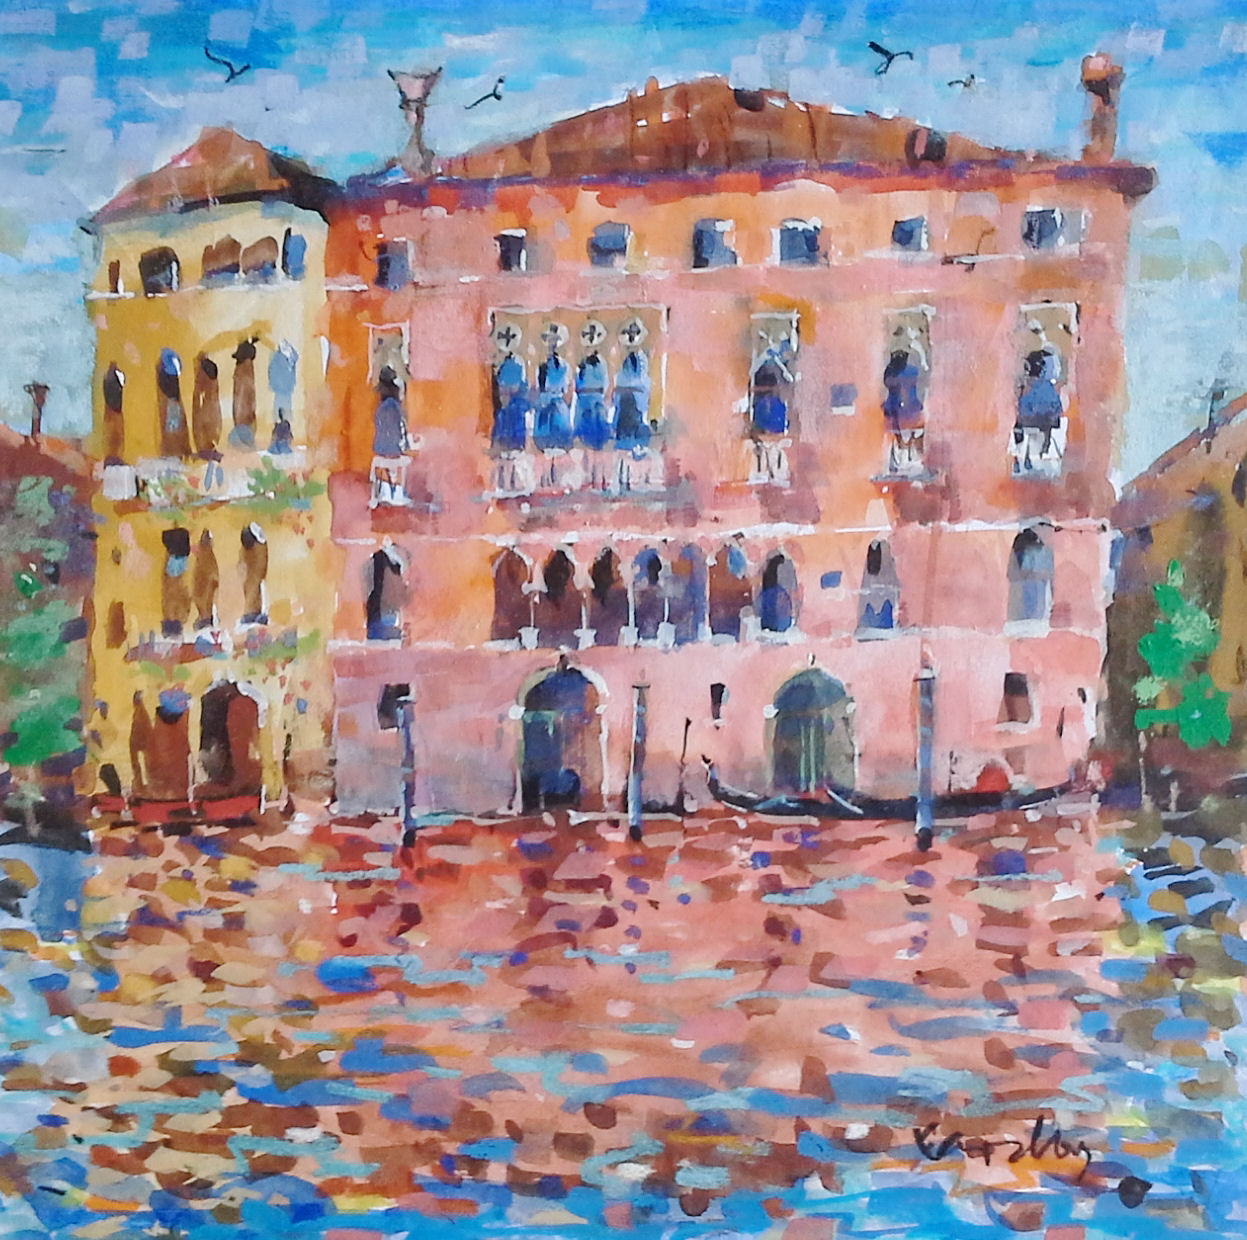 'Palazzo Sagredo' by artist Ron Eardley